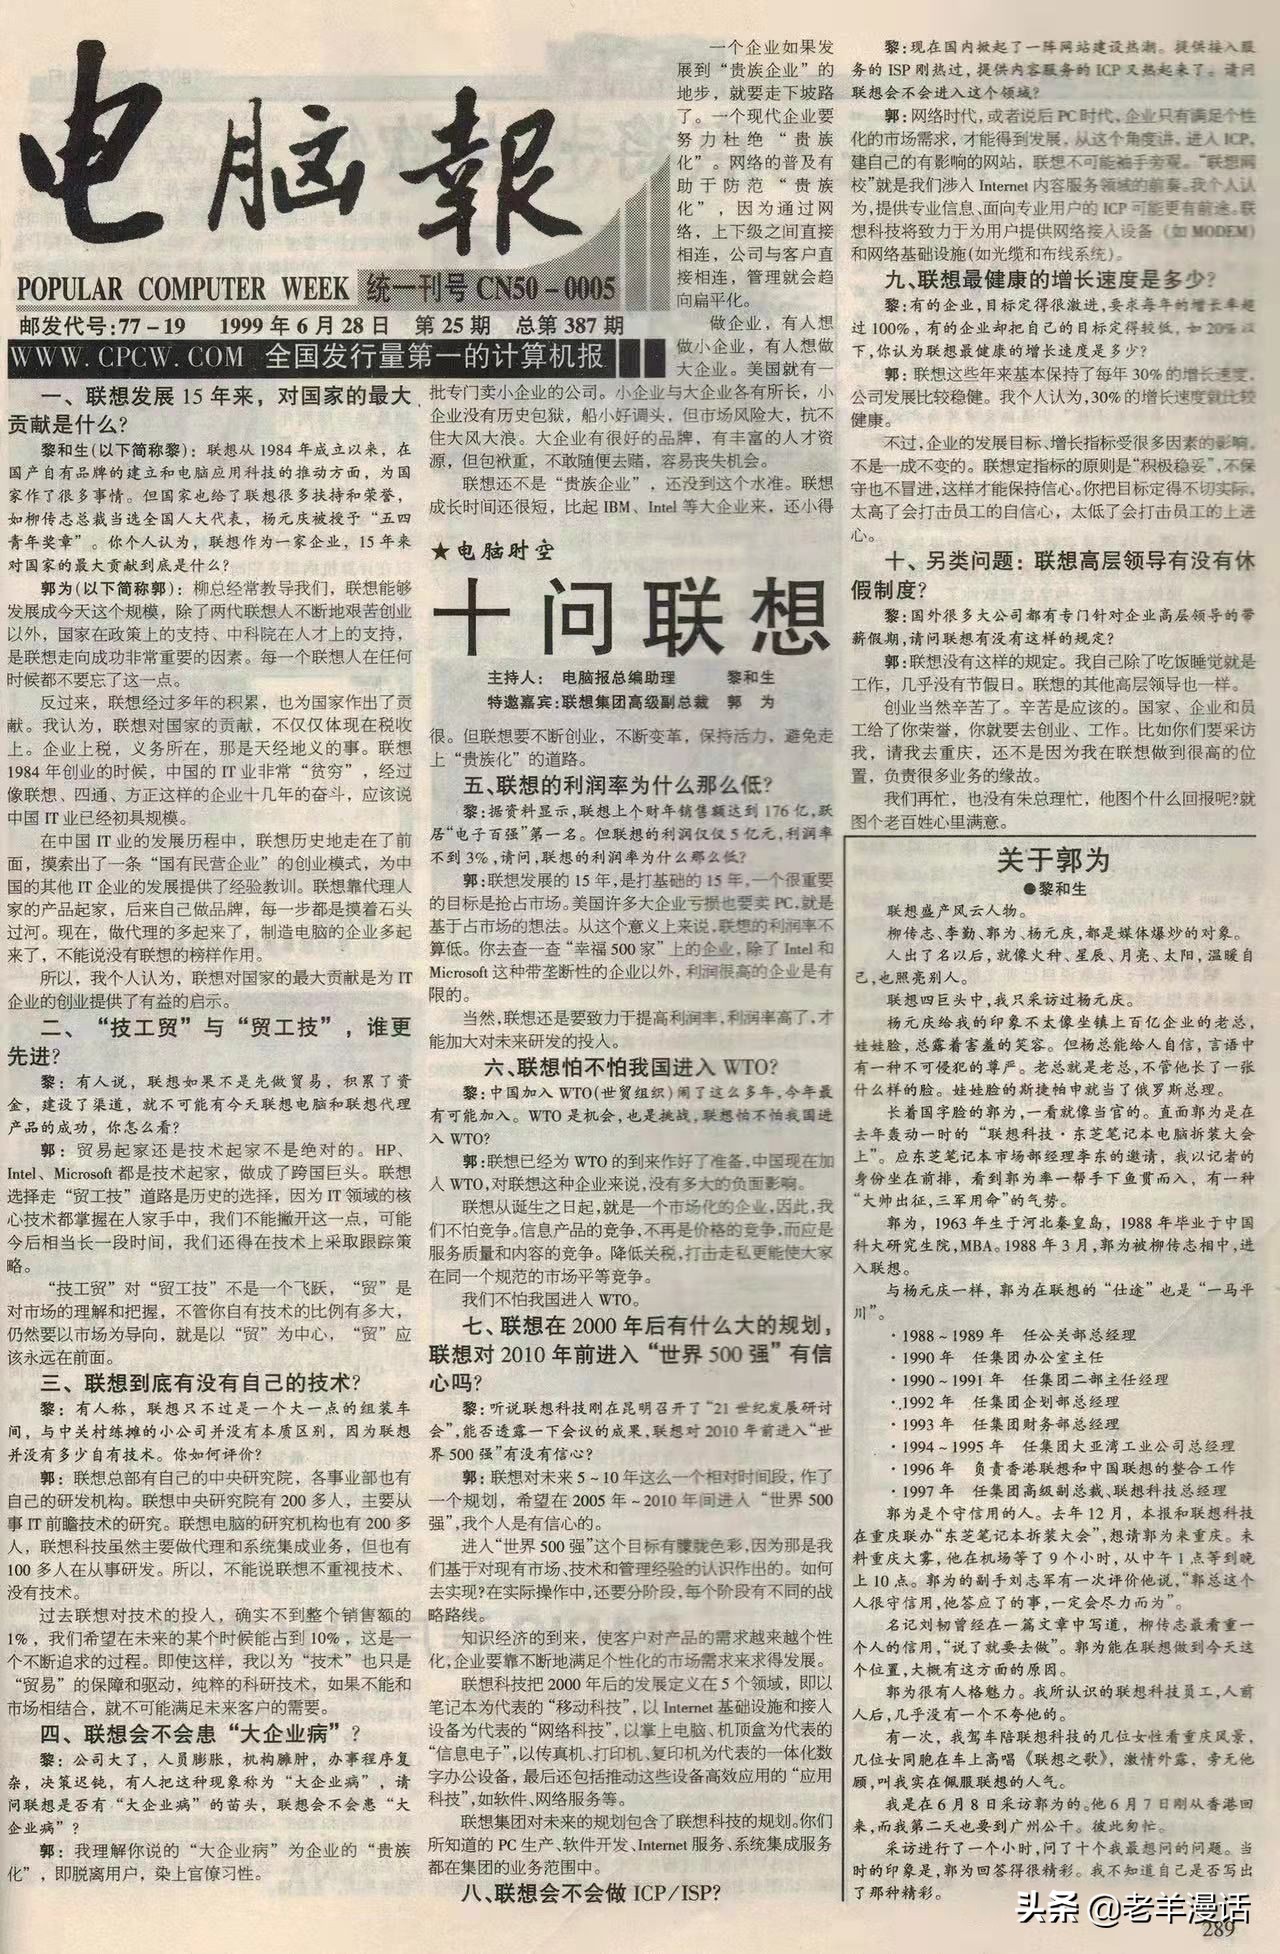 1999年“电脑报”刊文“十问联想”，到如今联想依然毫无长进